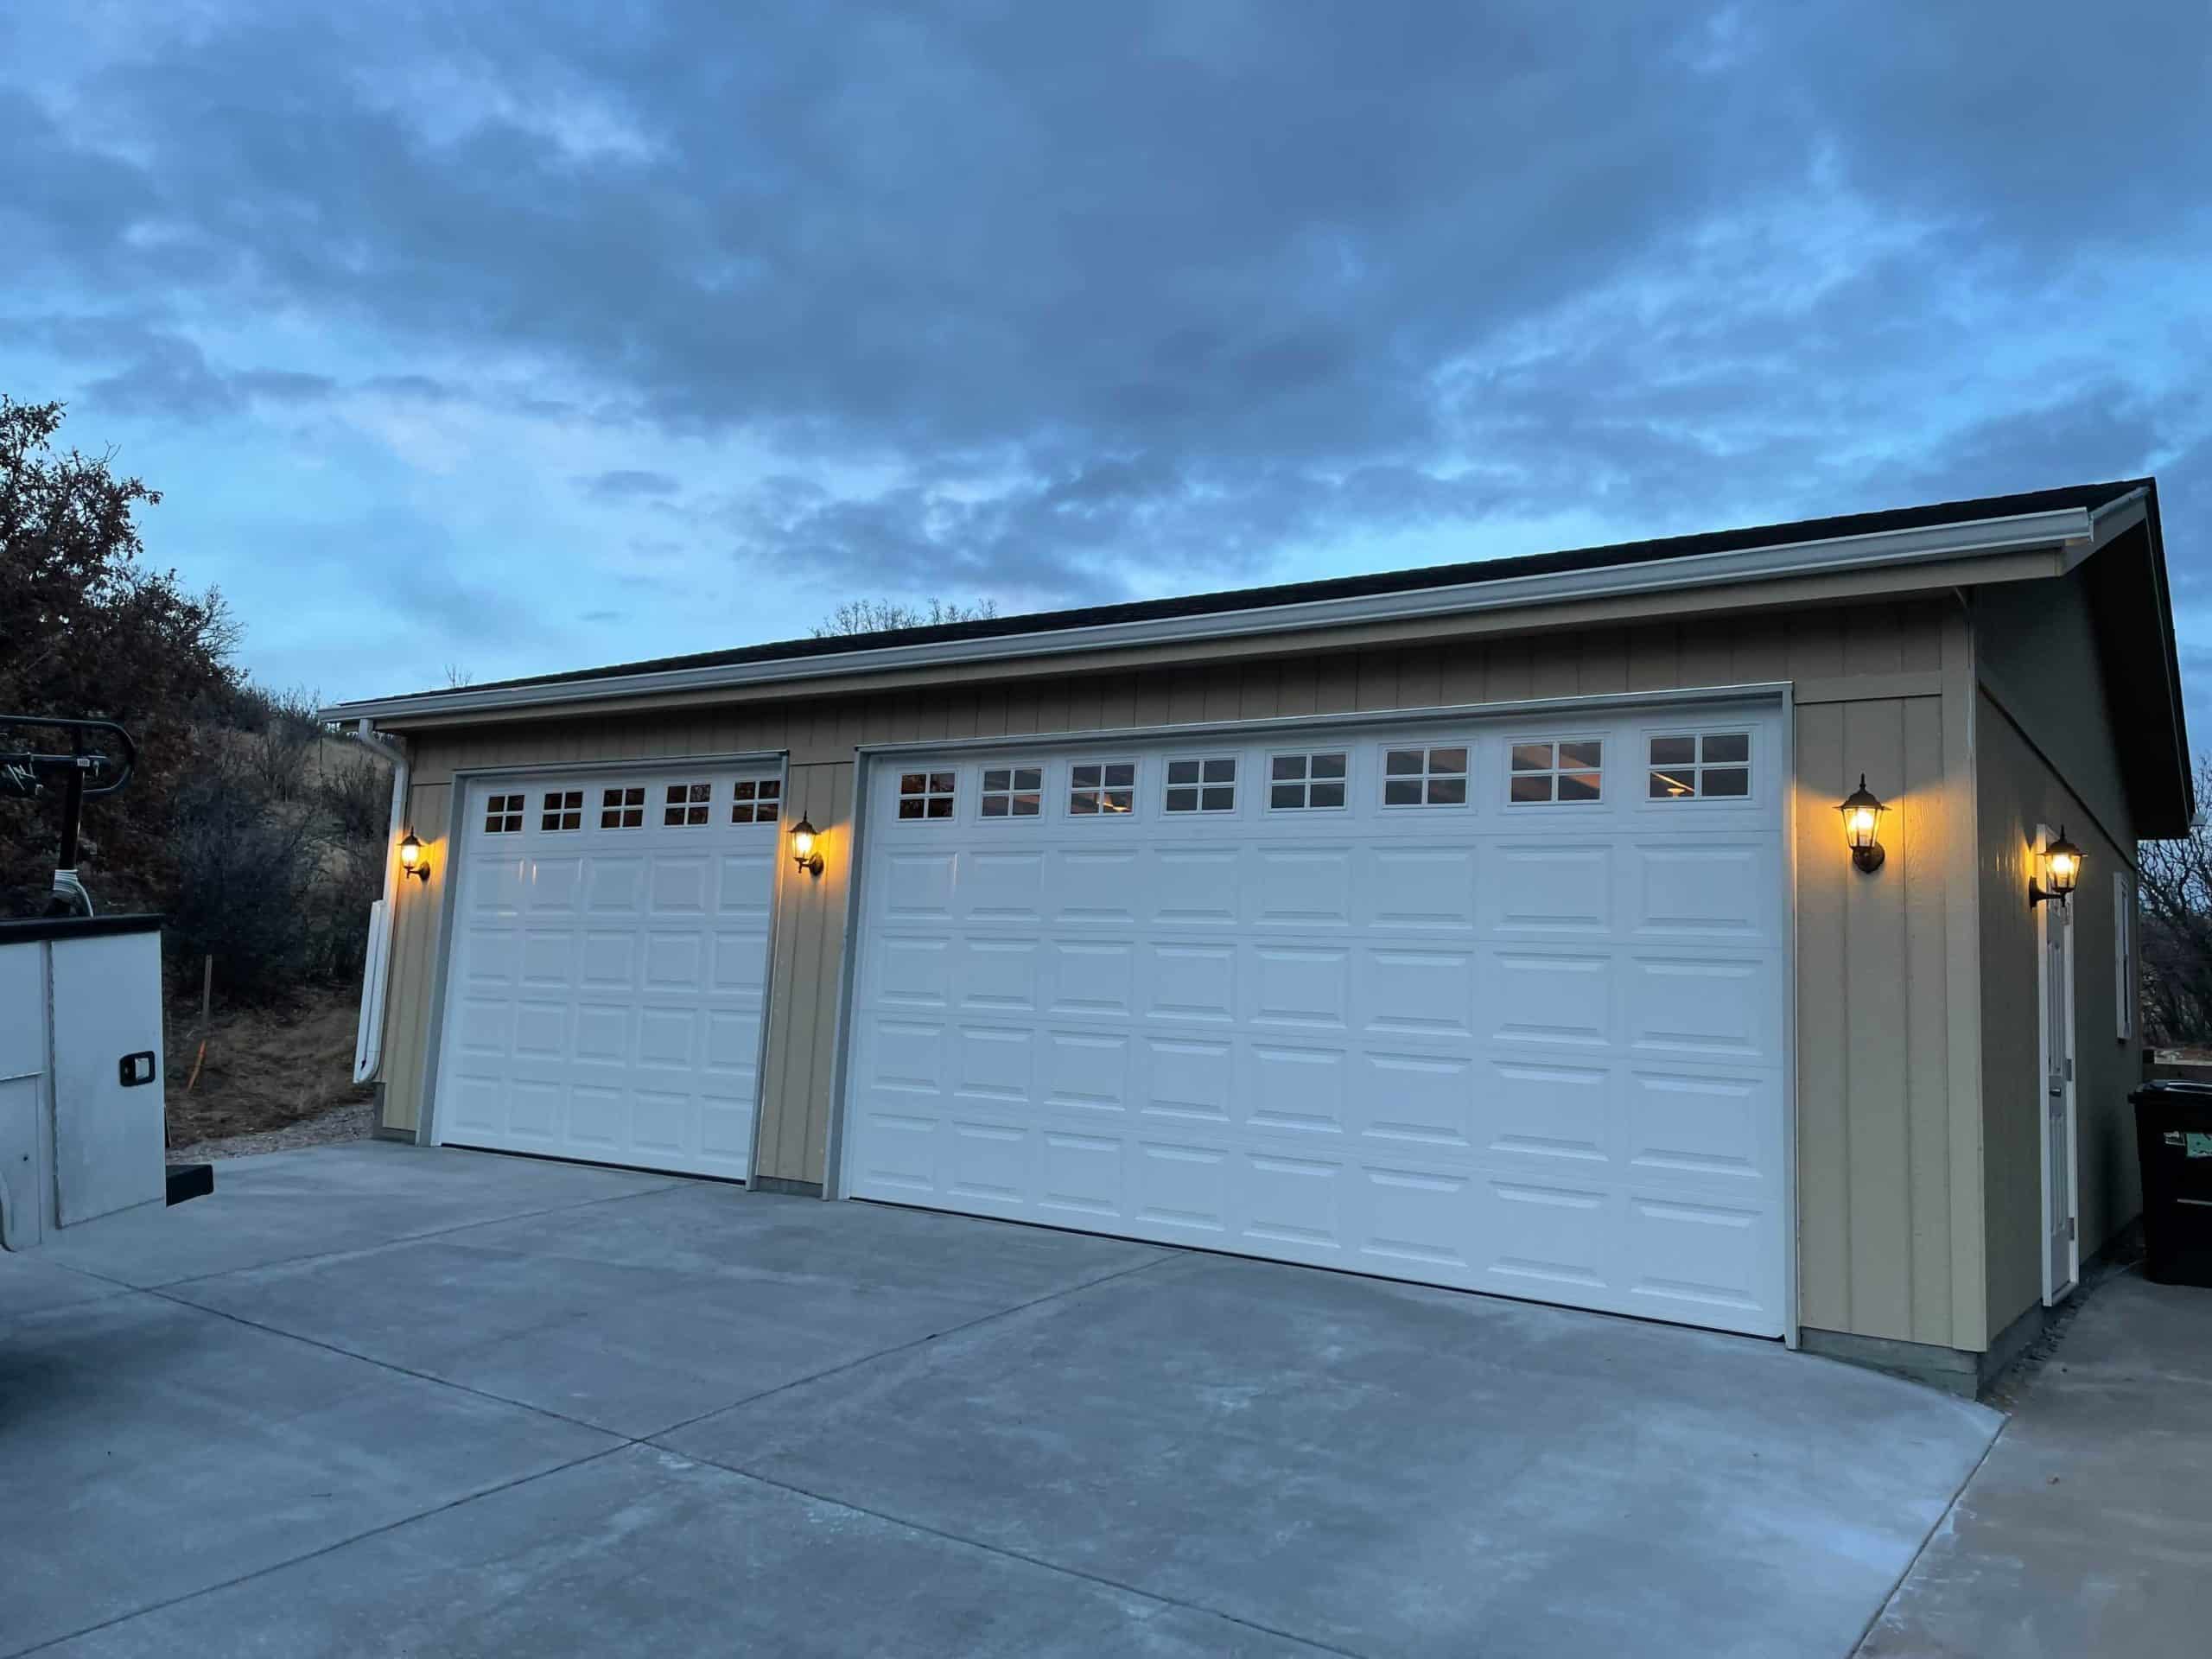 A newly installed garage door